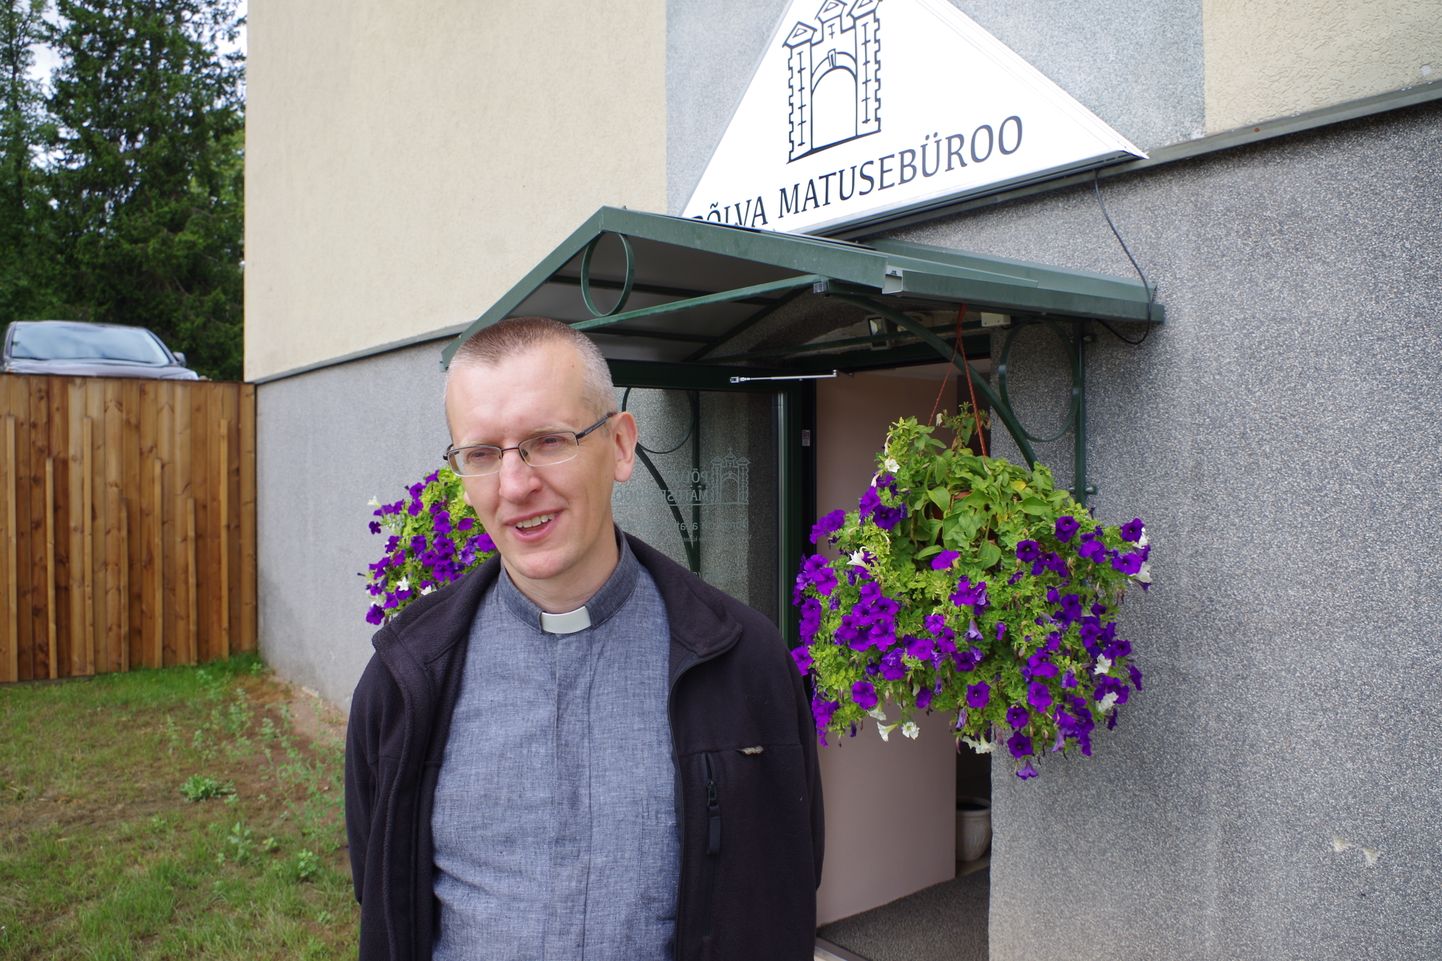 Põlva pastoraadi hoones avatud Põlva matusebüroo on Toomas Nigola sõnul endise Leevi Lillemäe büroo õigusjärglane.